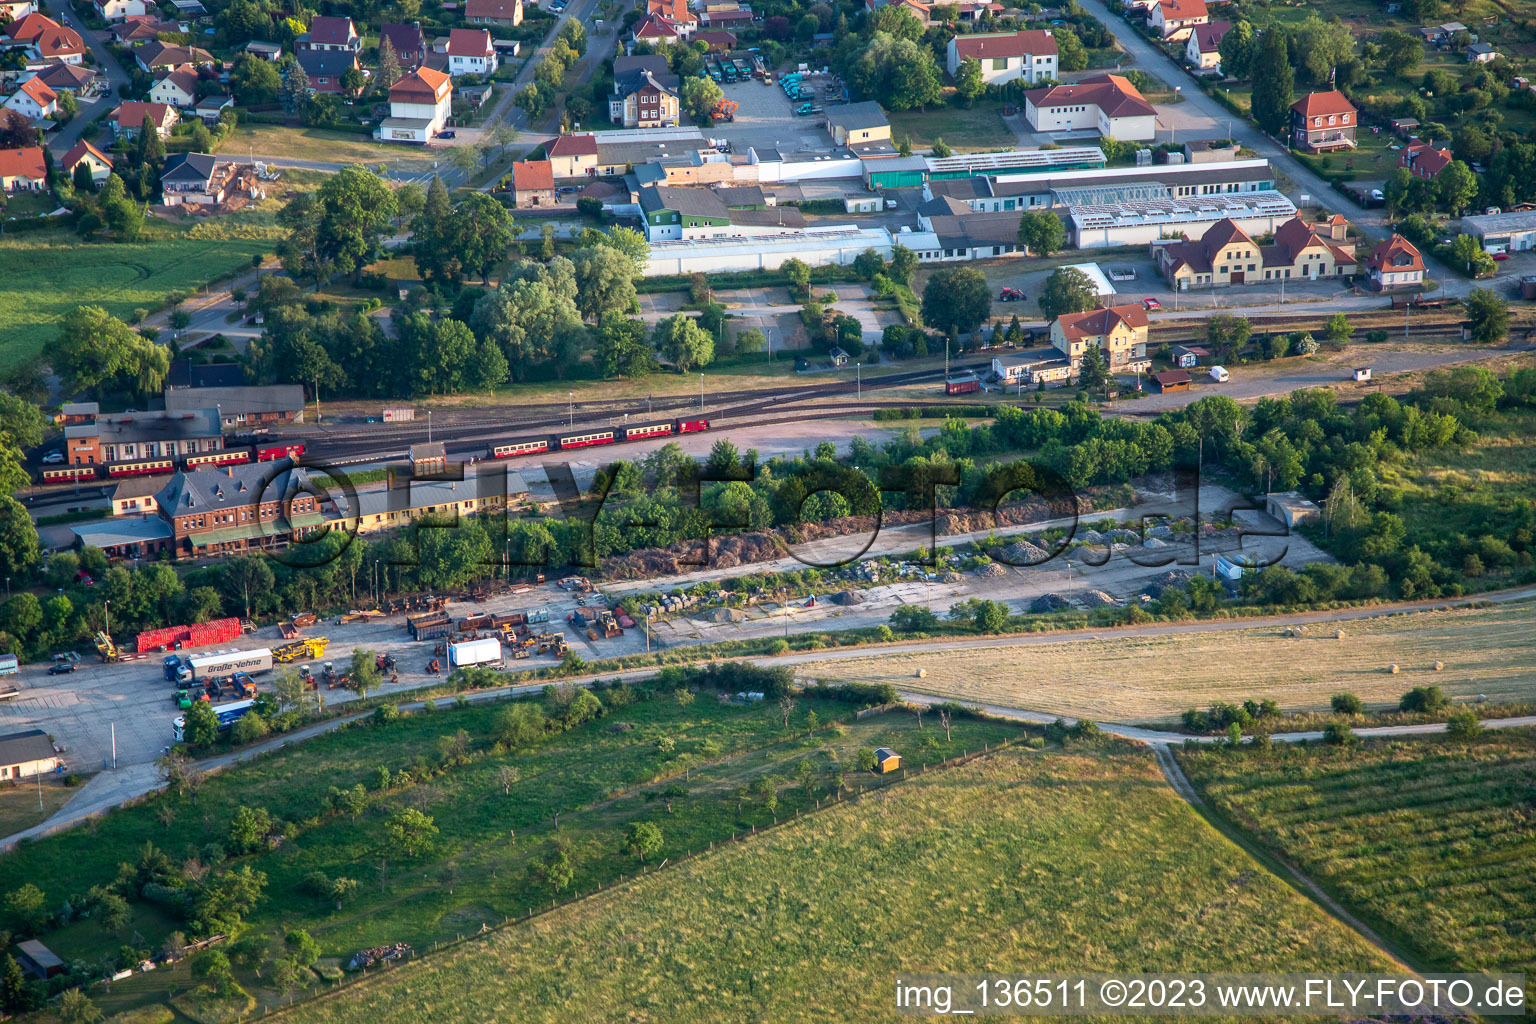 Vue aérienne de Station des Amis de Selketalbahn e. v à le quartier Gernrode in Quedlinburg dans le département Saxe-Anhalt, Allemagne